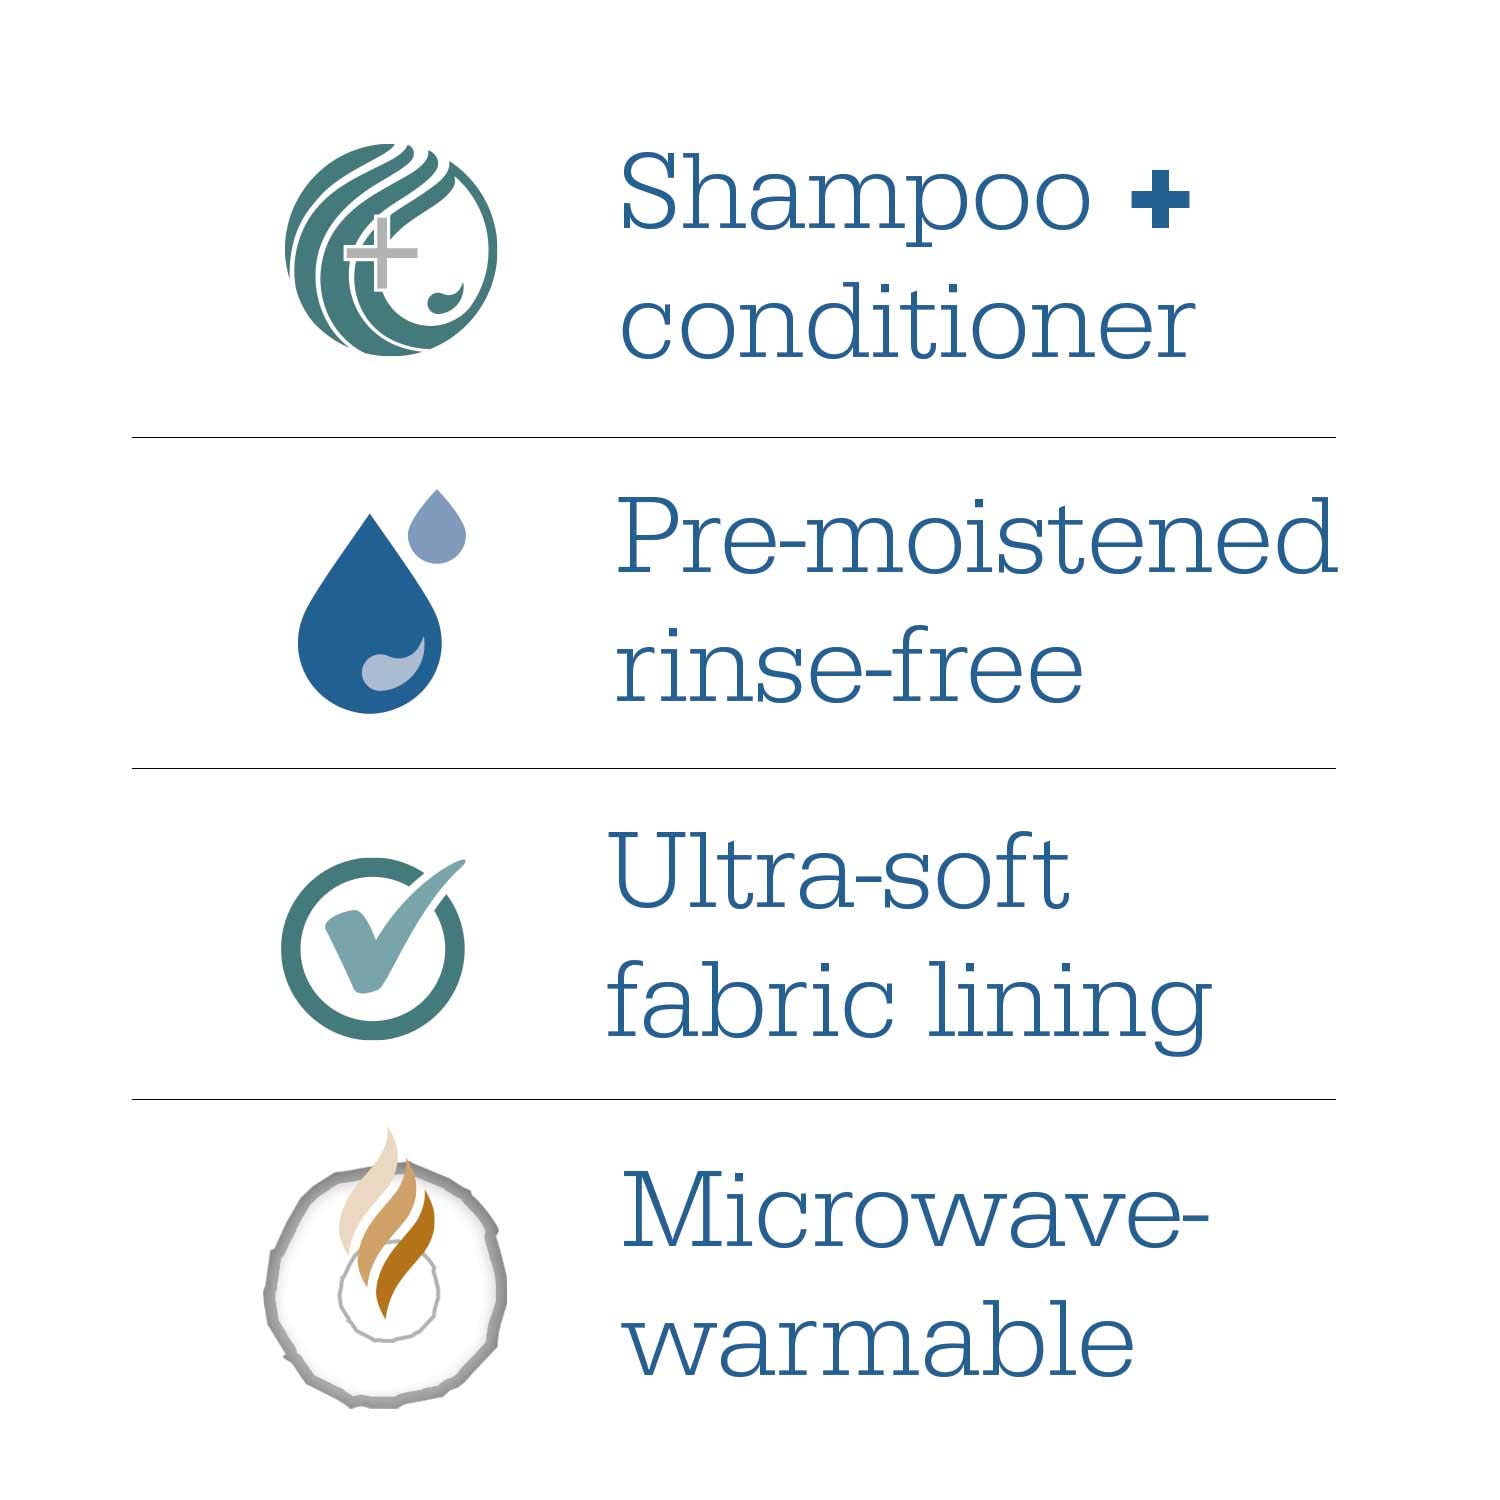 Mikrowellengeeigneter, latexfreier, alkoholfreier Shampoo-Aufsatz ohne Spülen für Behinderte